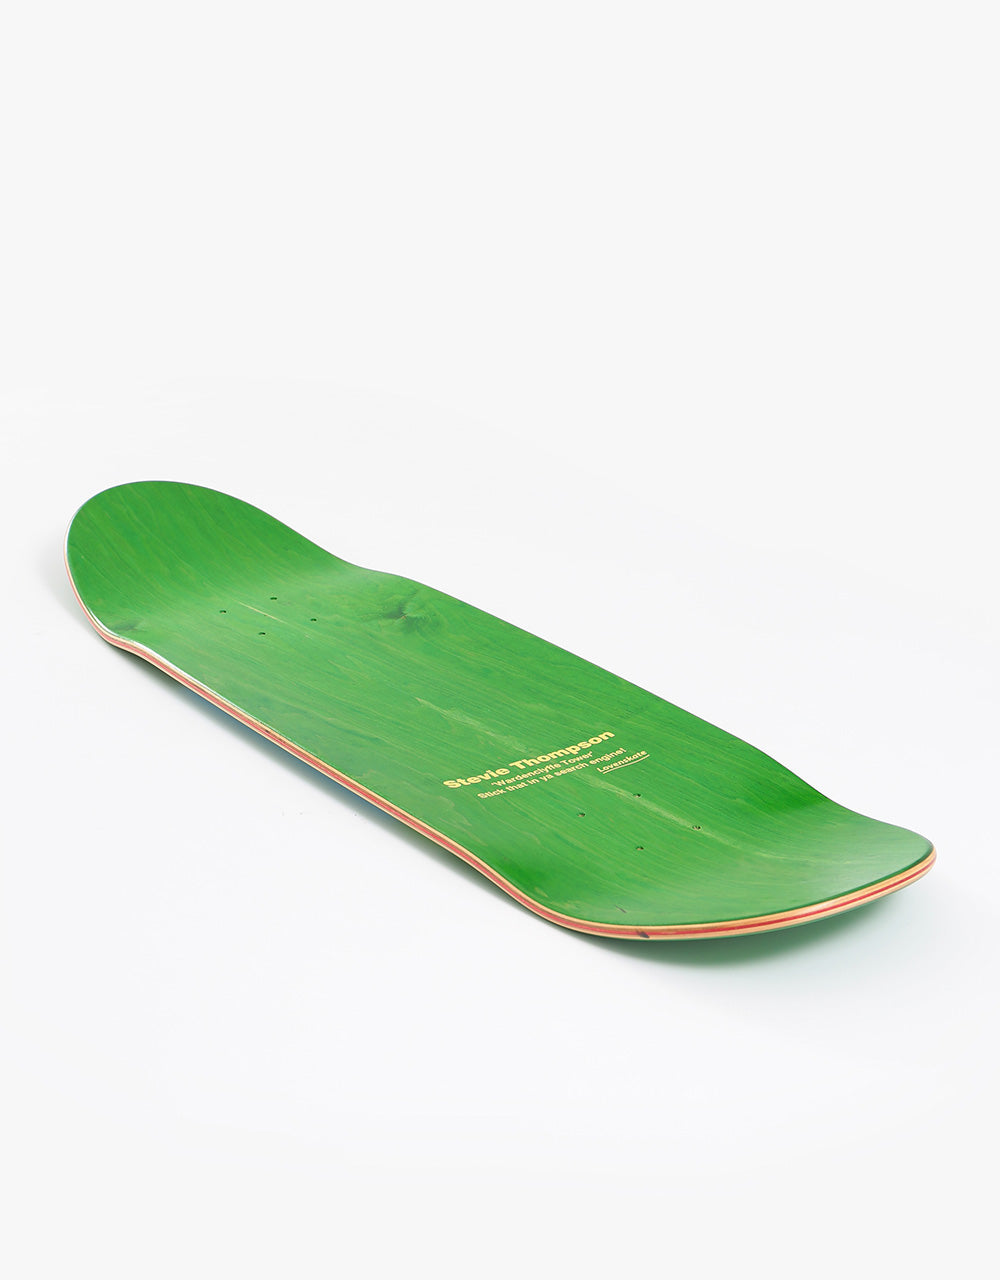 Lovenskate Thompson Free Energy Guest Pro Skateboard Deck - 8.75"